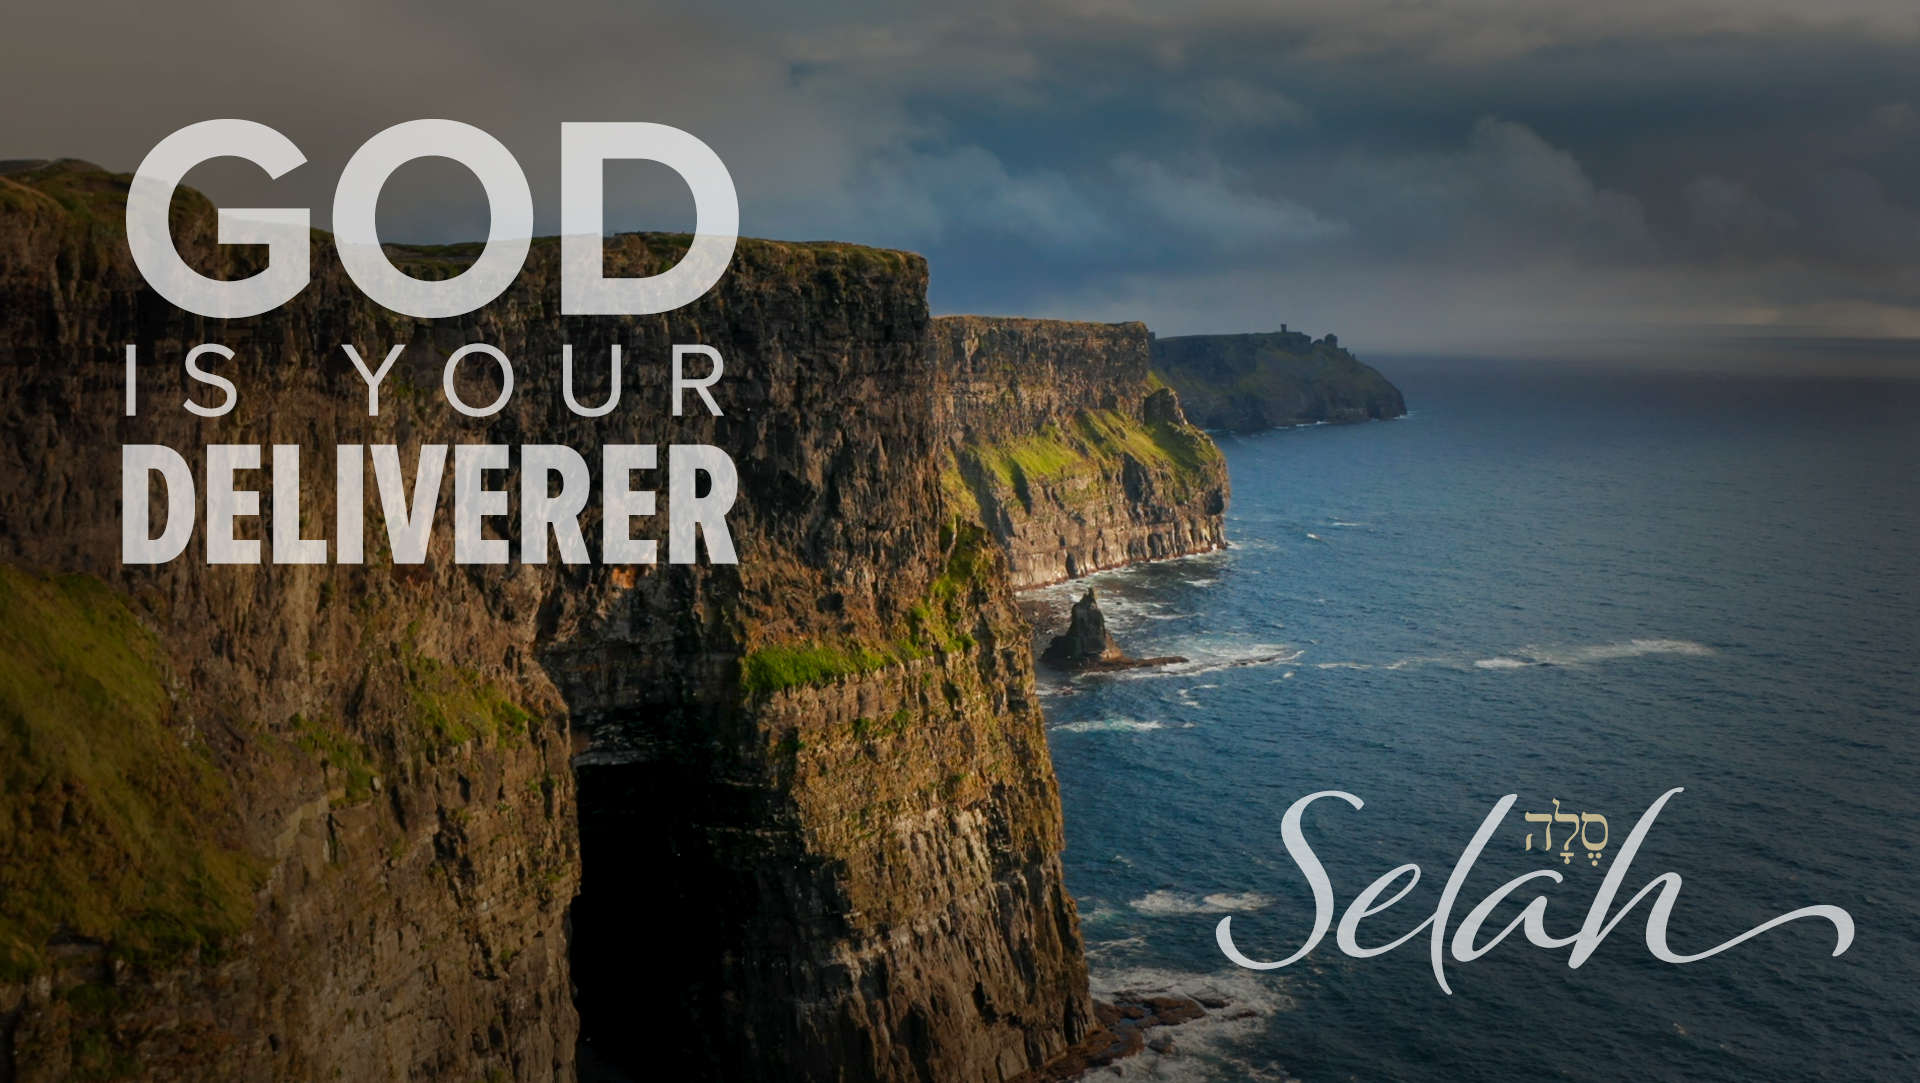 Selah: God is Your Deliverer